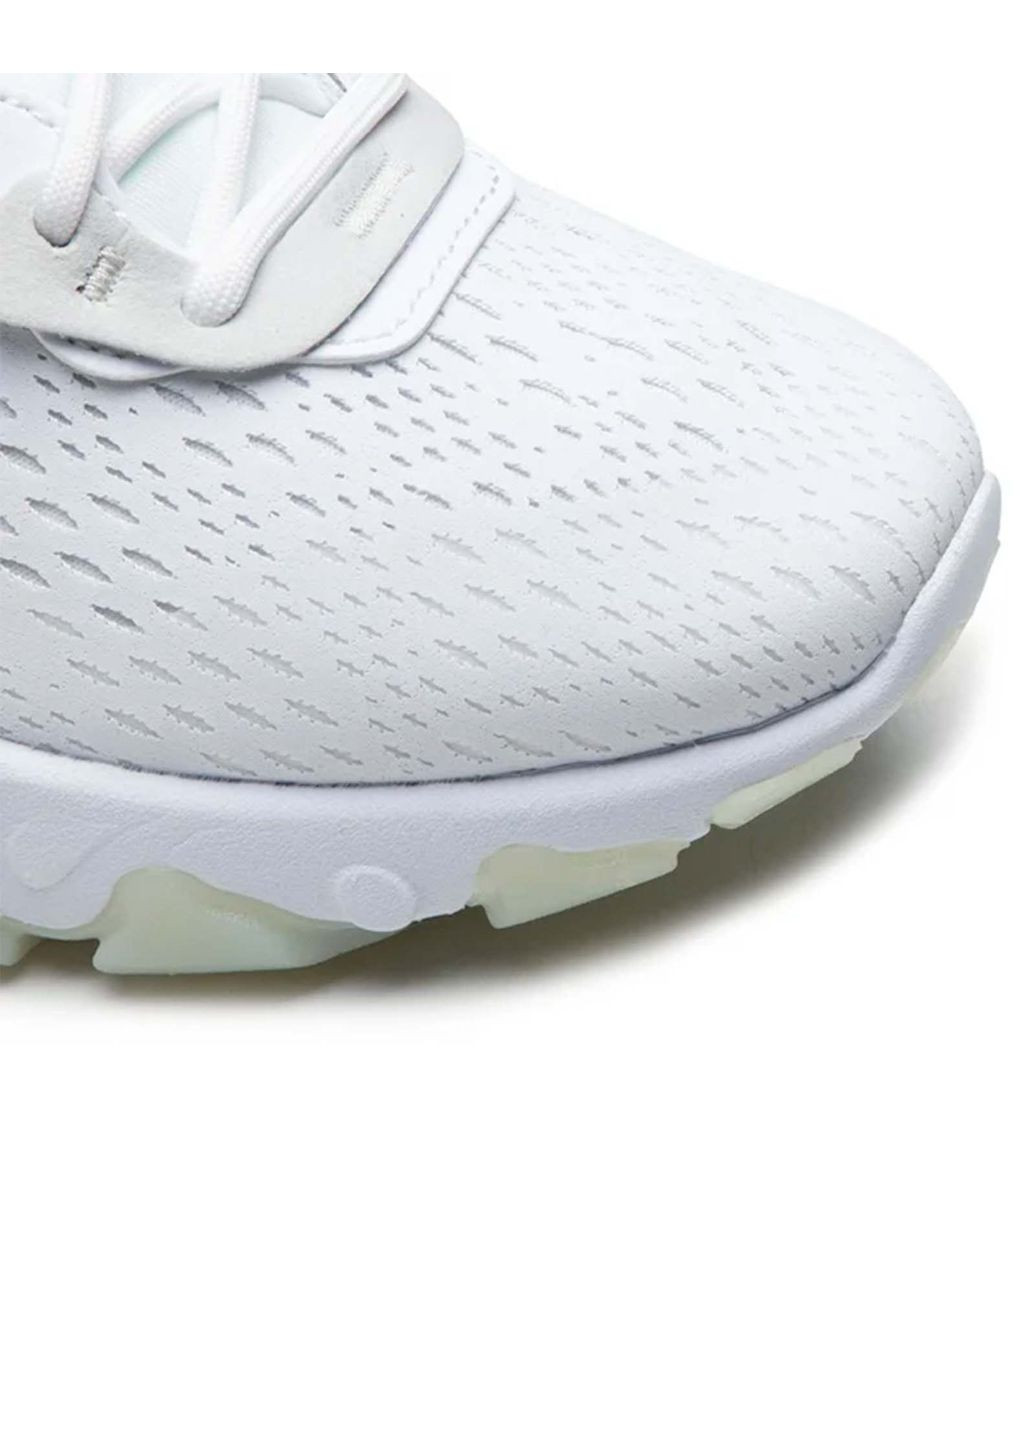 Білі всесезон кросівки чоловічі react vision cd4373-101 весна-літо текстиль сітка білі Nike